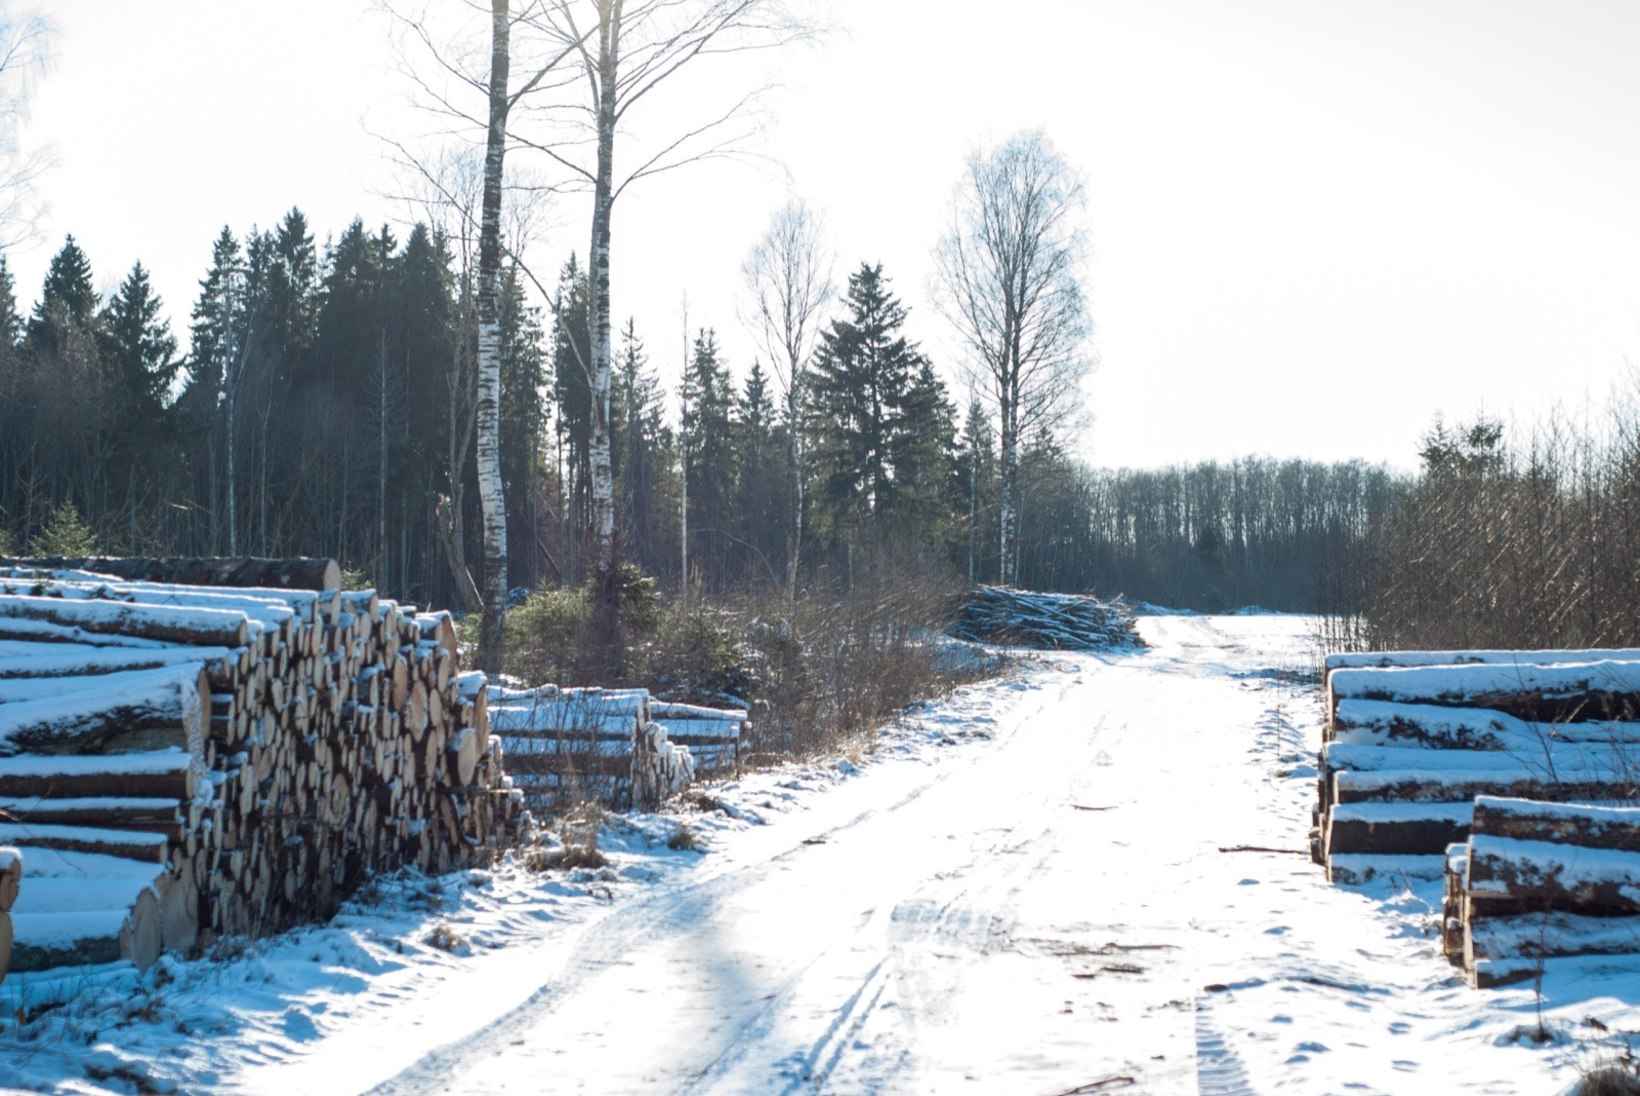 Vakra: koostöö Euroopa metsainstituudiga aitab kaasa Eesti metsade kaitsele